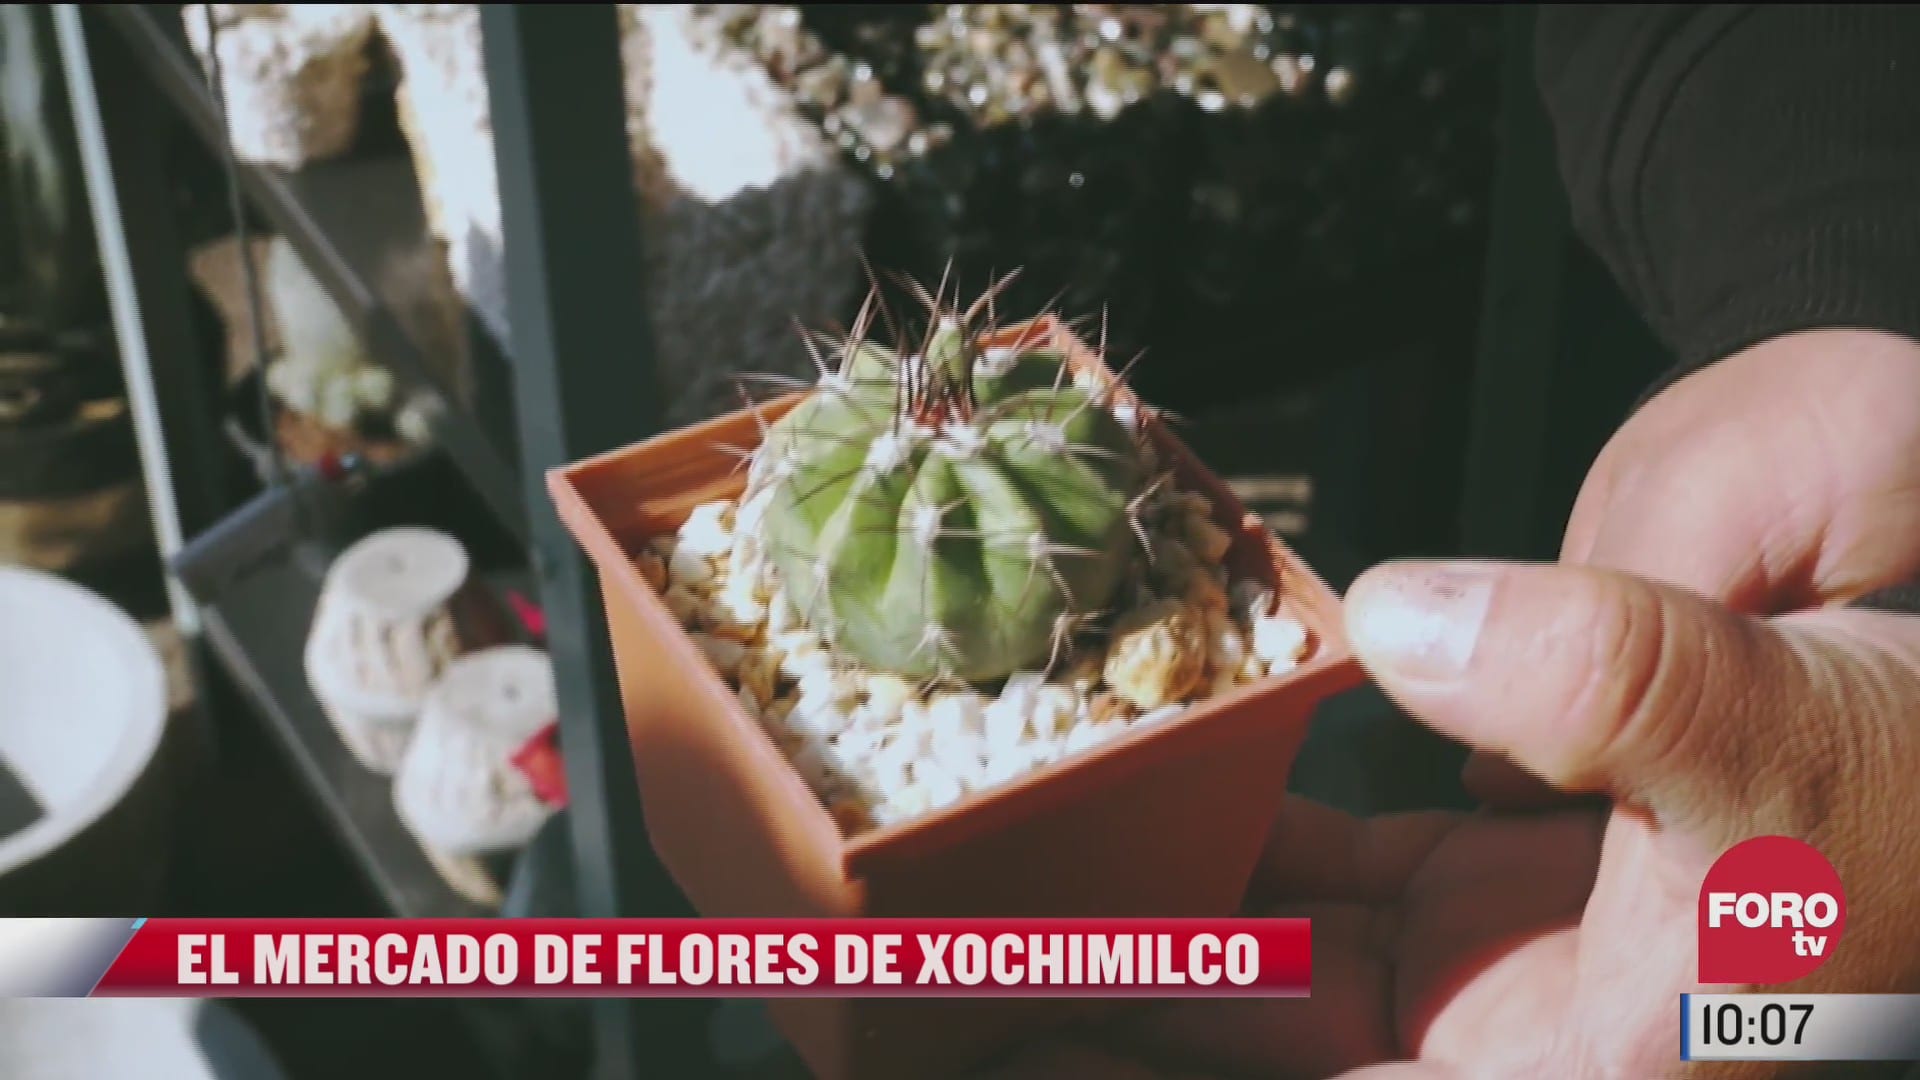 el mercado de flores de xochimilco ofrece gran variedad de plantas y macetas